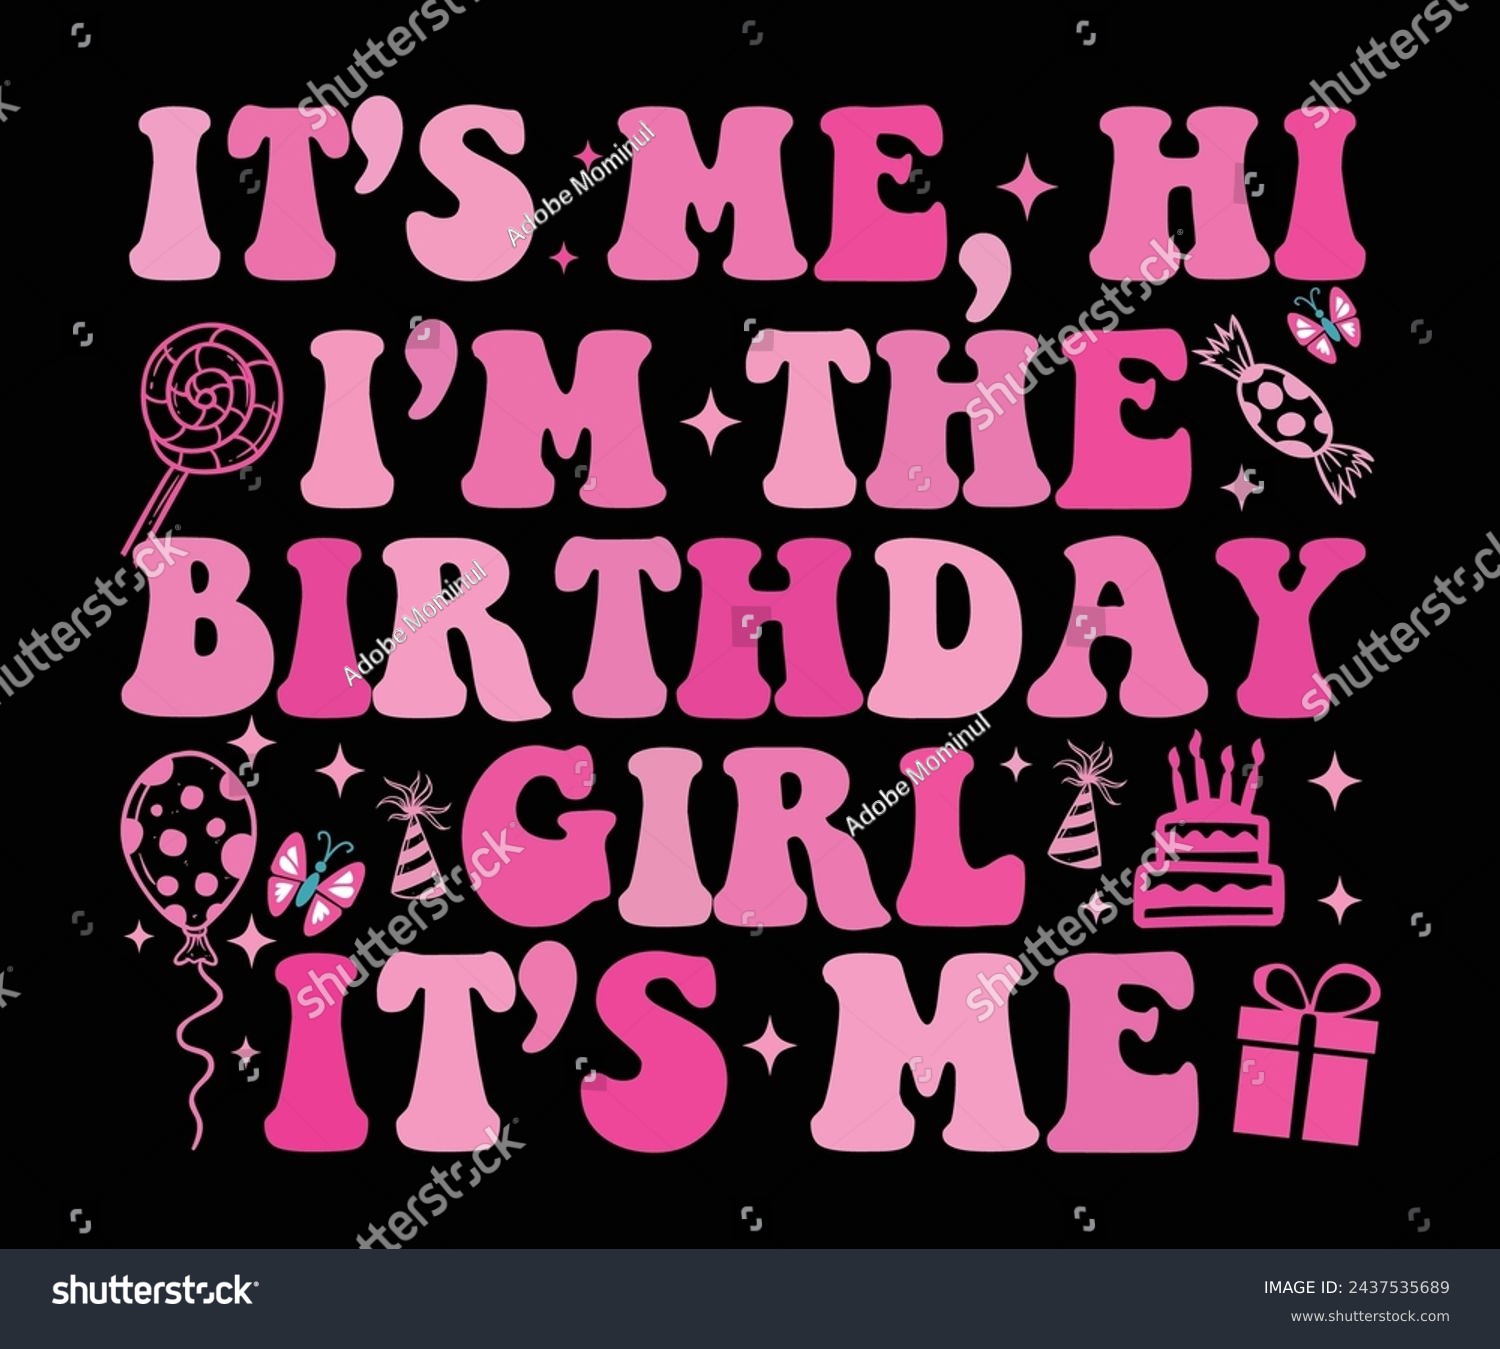 SVG of It’s Me Hi I’m The Birthday Girls It’s Me Retro,Birthday Svg,Birthday Quotes,Birthday Gift Svg,Birthday Shirt,Happy Birthday Svg,T-shirt,Birthday Girl Svg,Cut file, svg